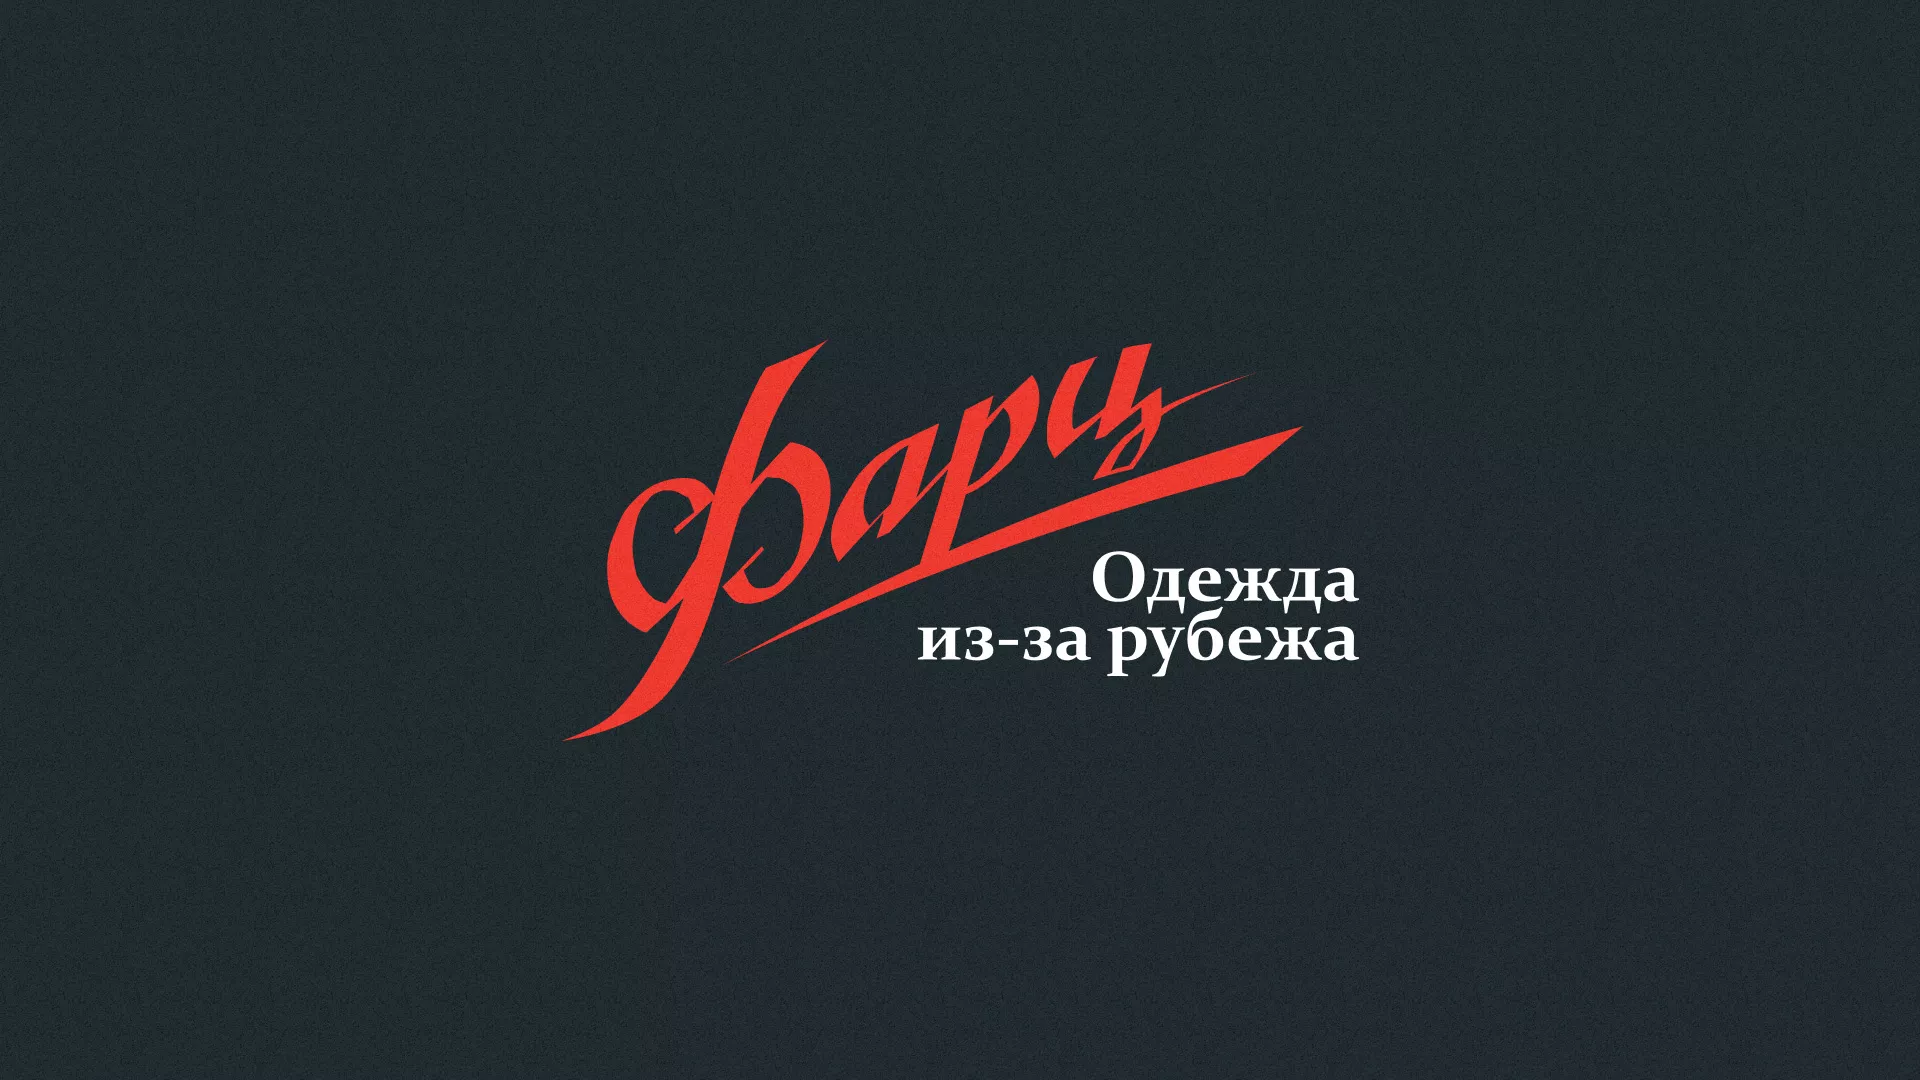 Разработка логотипа магазина «Фарц» в Орехово-Зуево